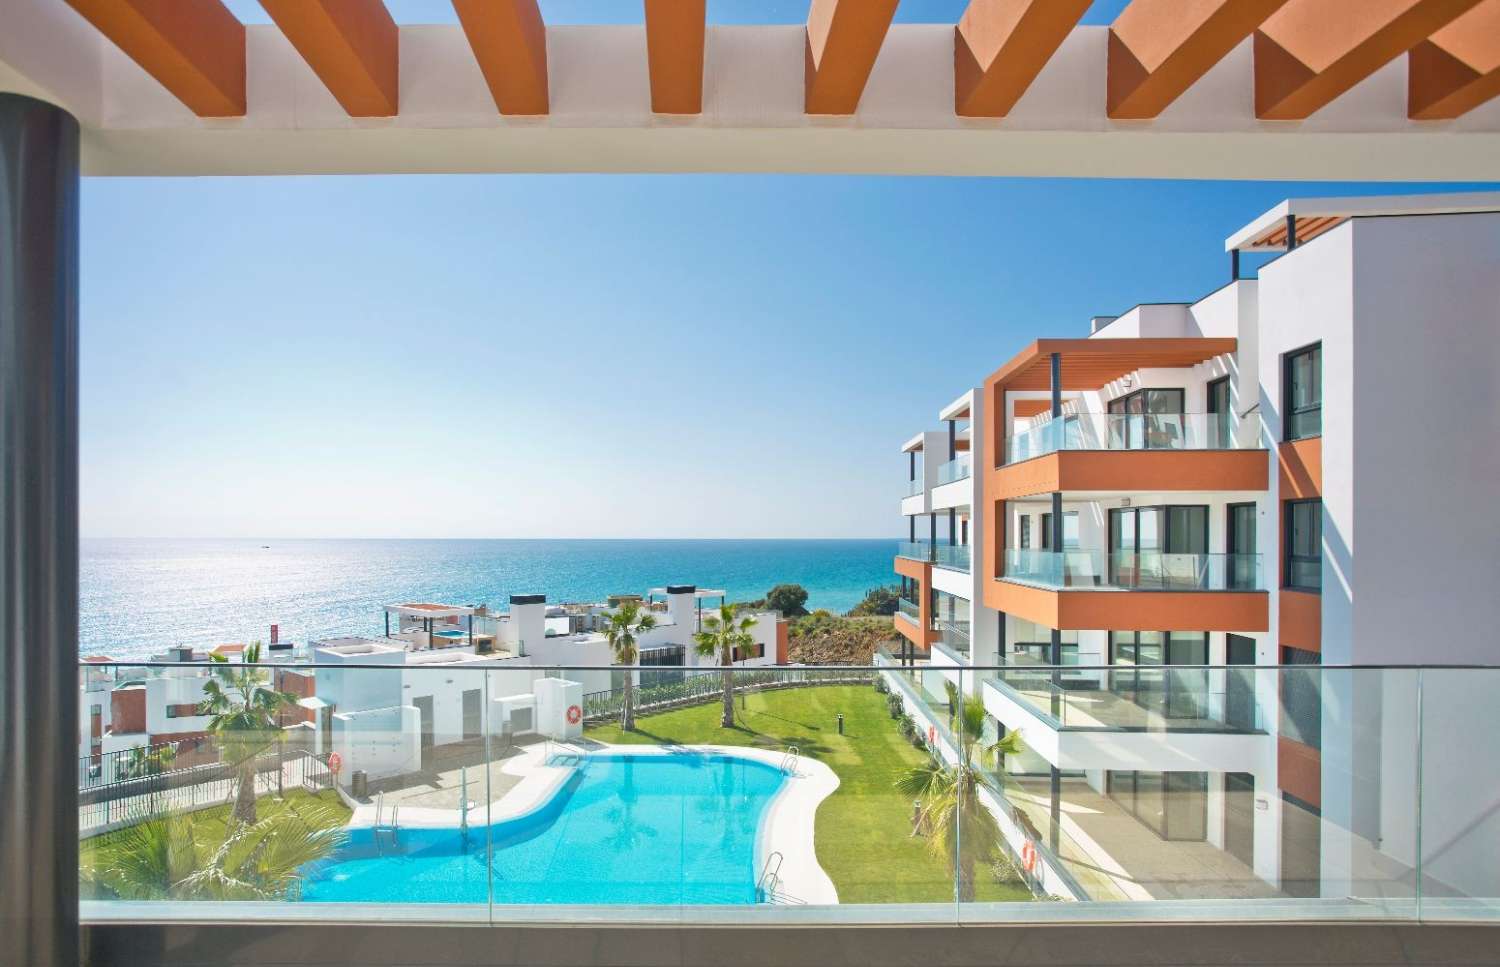 Romslig 3 roms leilighet med en privilegert beliggenhet noen få minutter fra stranden med terrasse på 62 m2